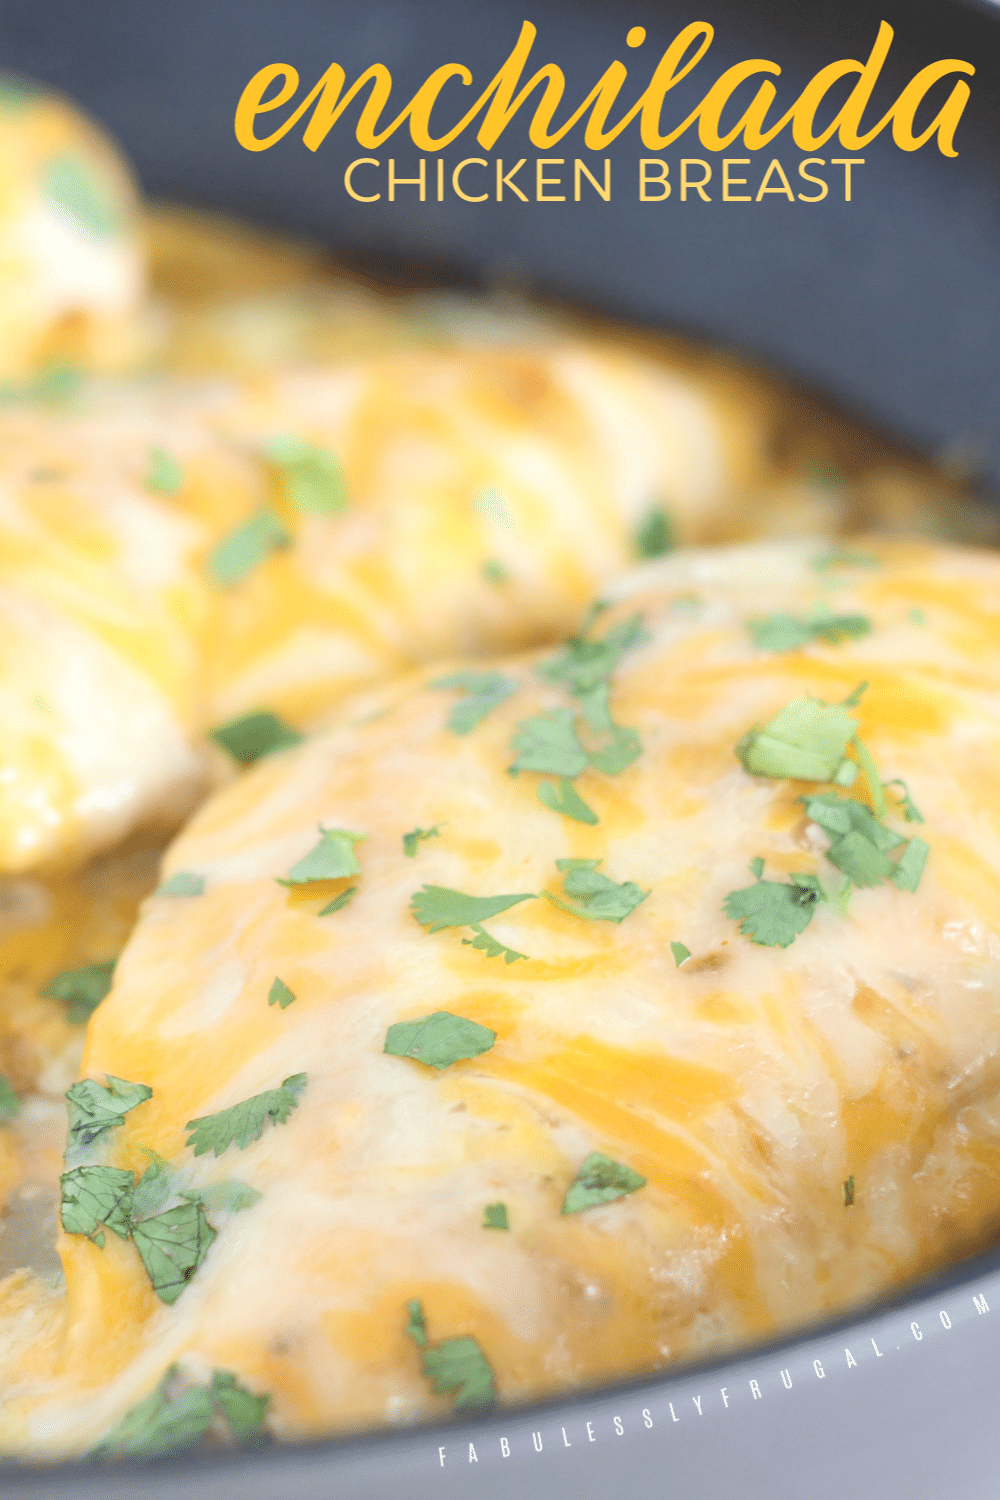 Enchilada chicken breast recipe